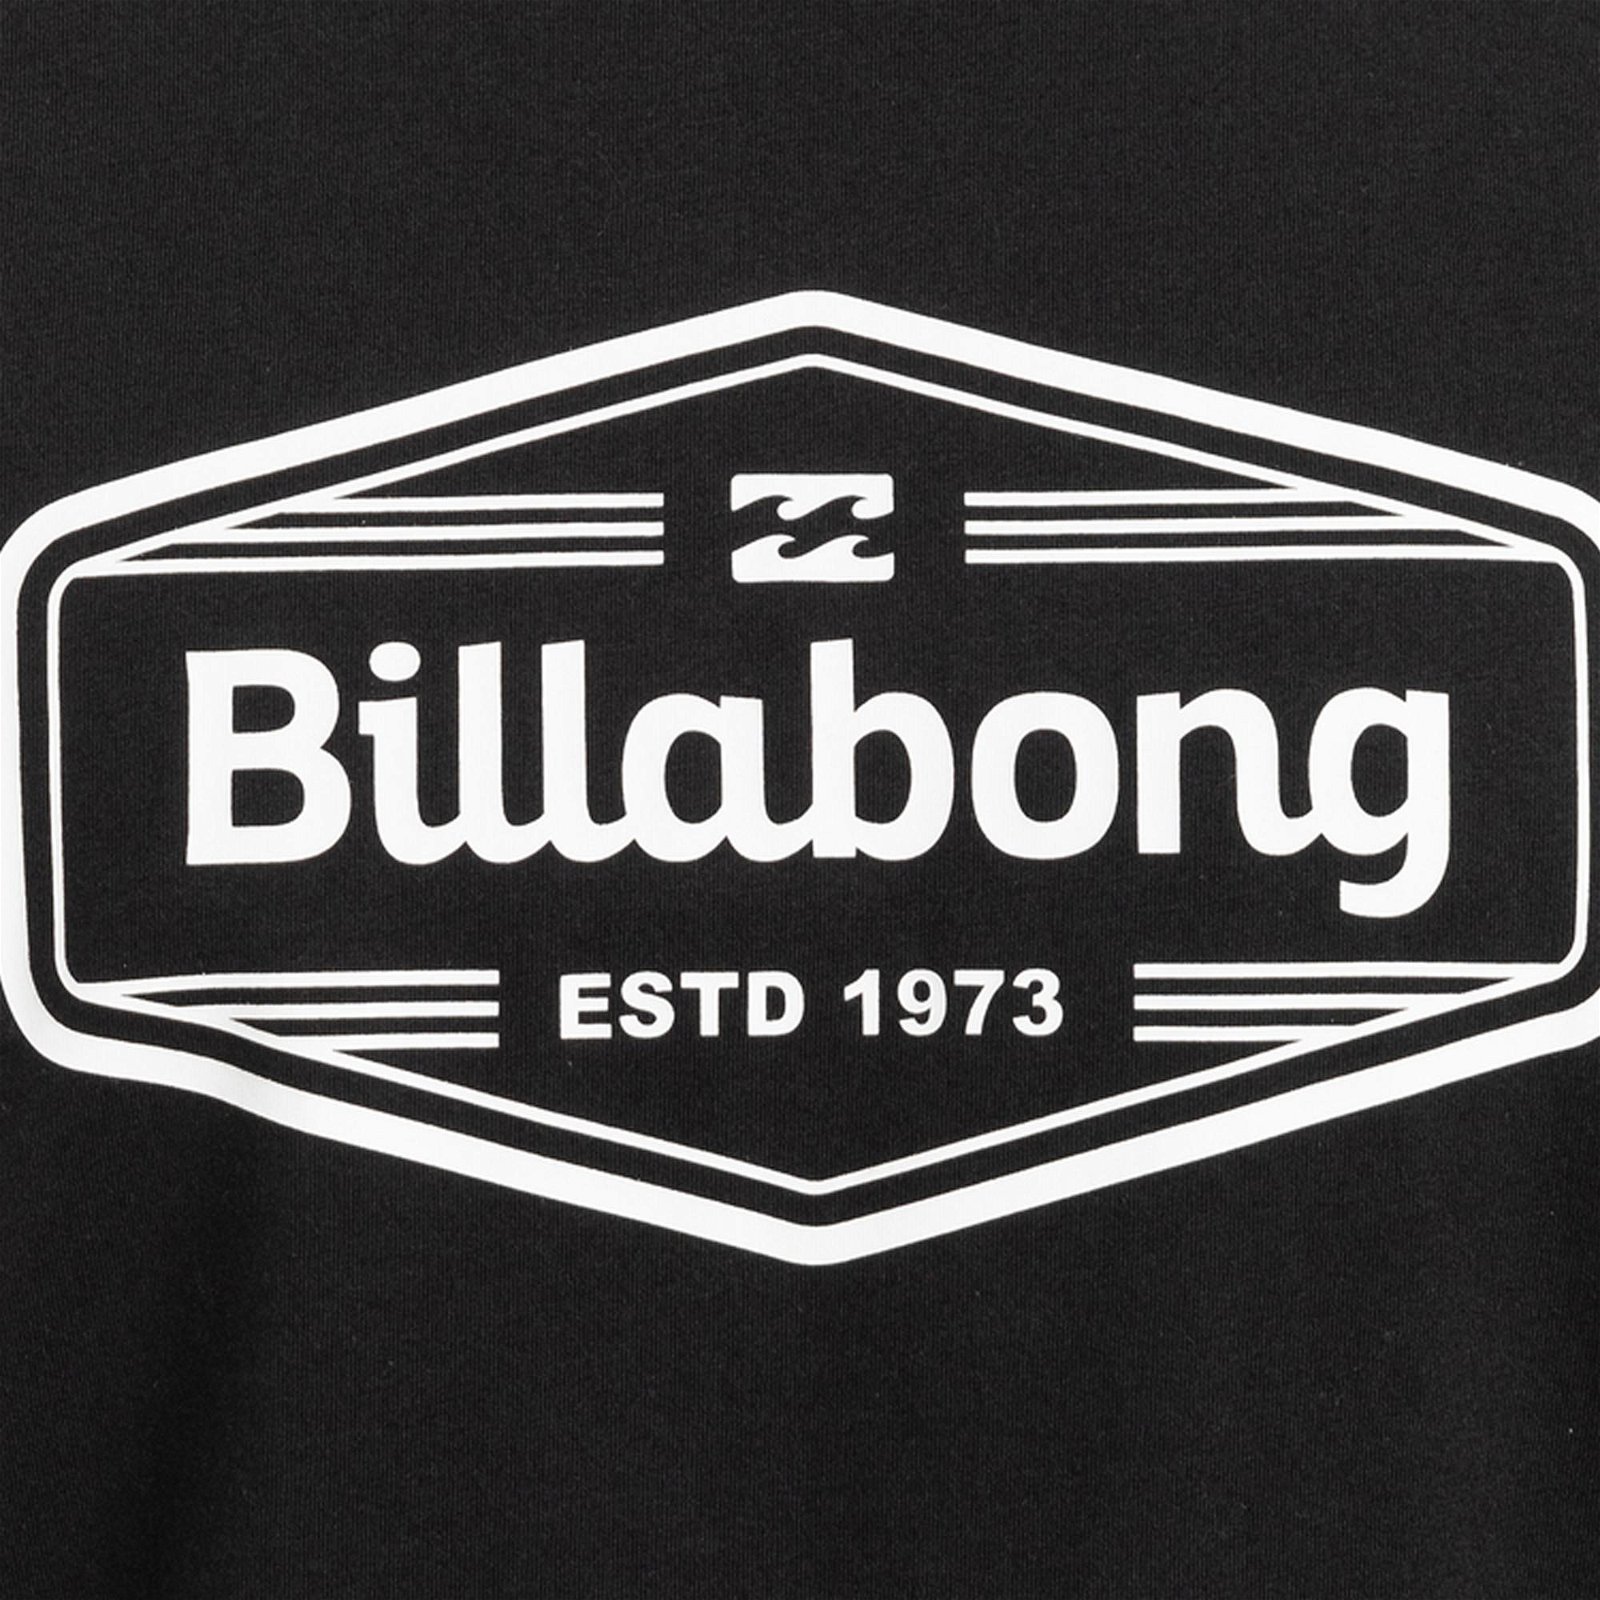 Billabong Trademark Erkek Tişört